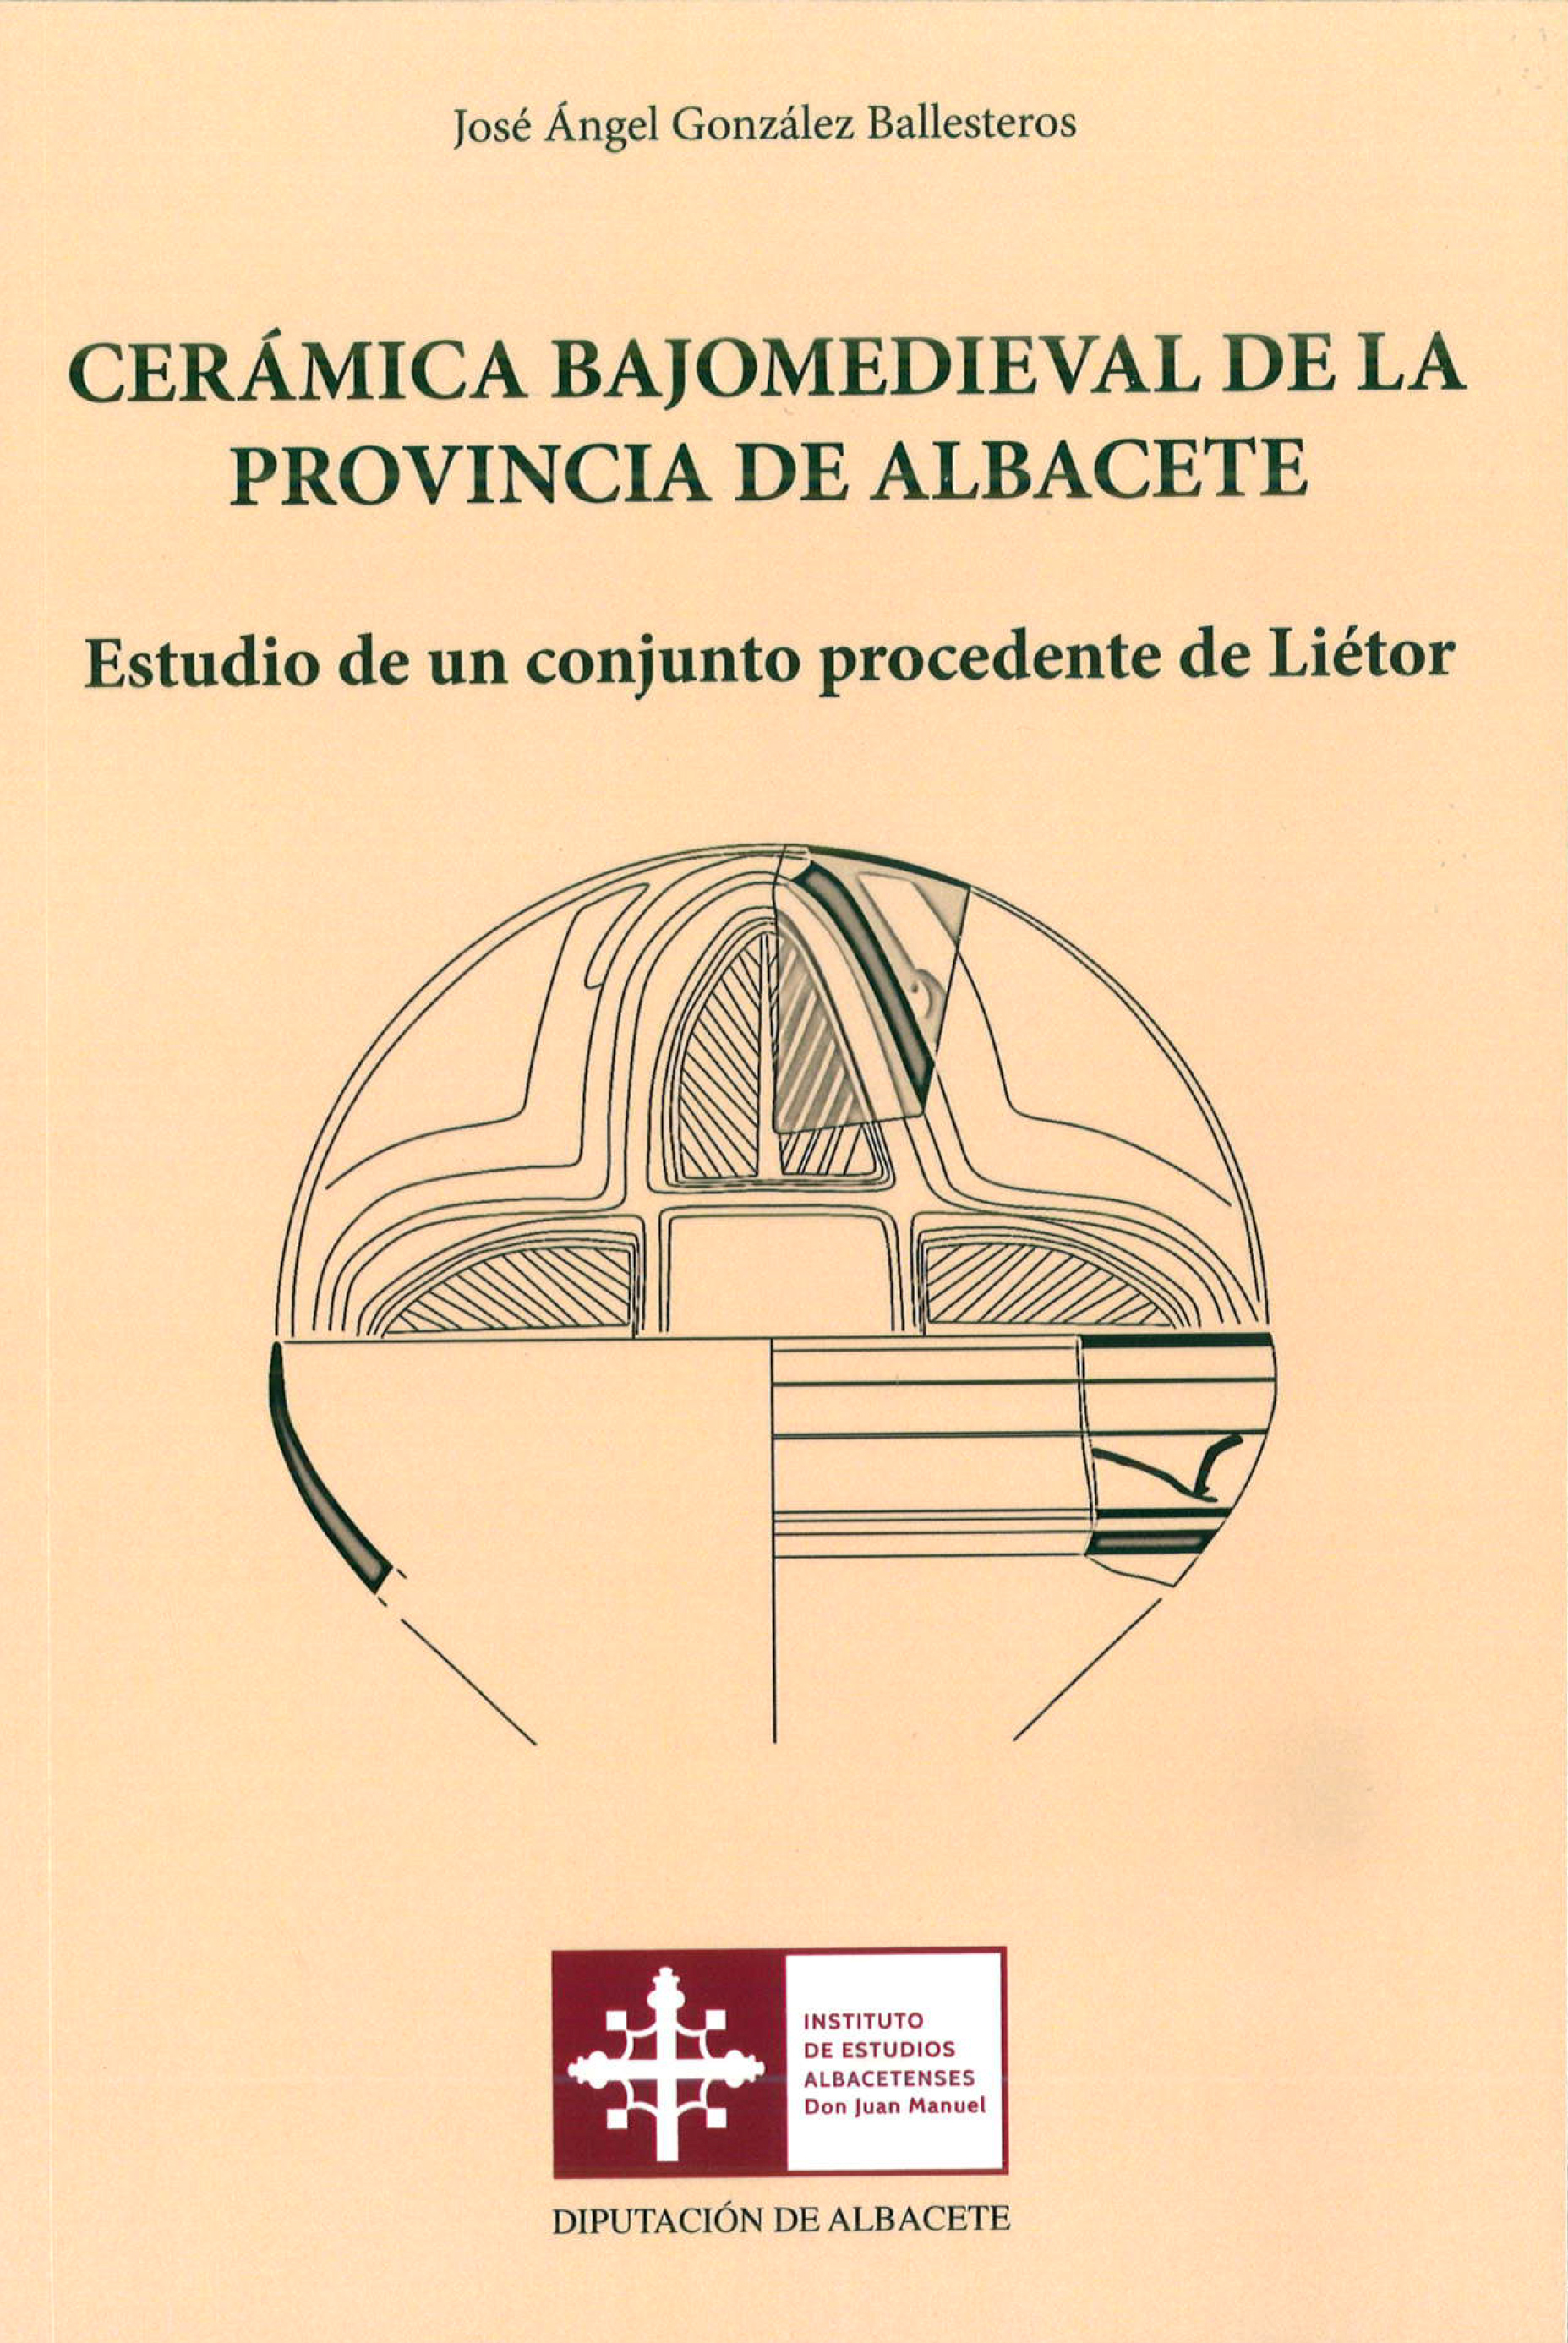 Imagen de portada del libro Cerámica bajomedieval de la provincia de Albacete